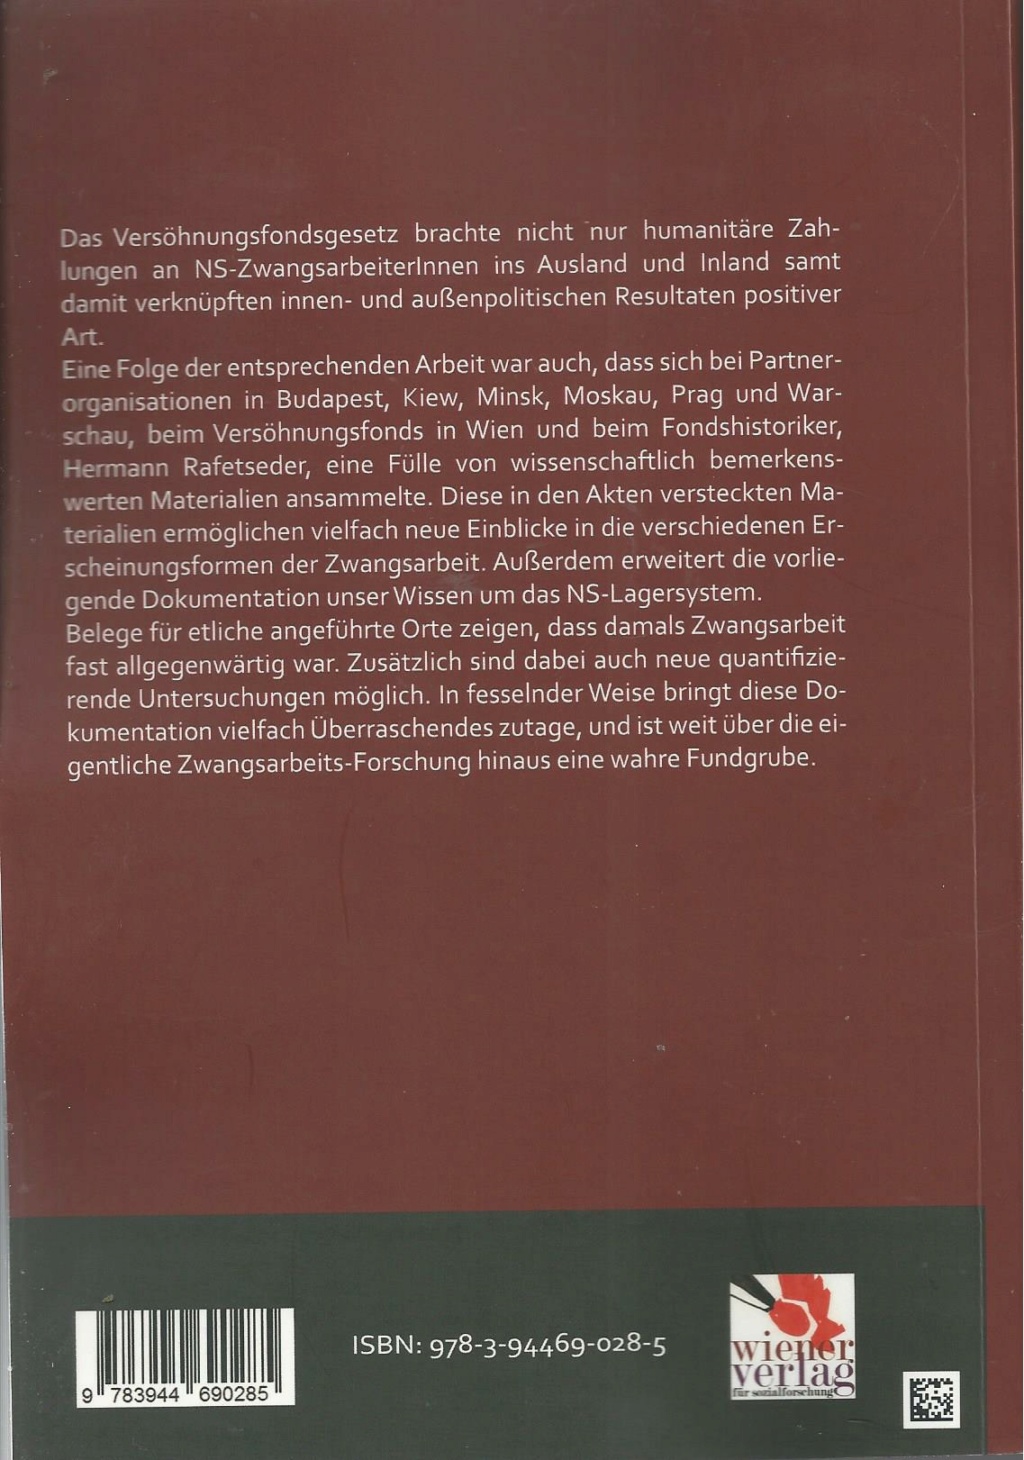 Nachtrag - Die Büchersammlungen der Forumsmitglieder - Seite 10 Bild1445